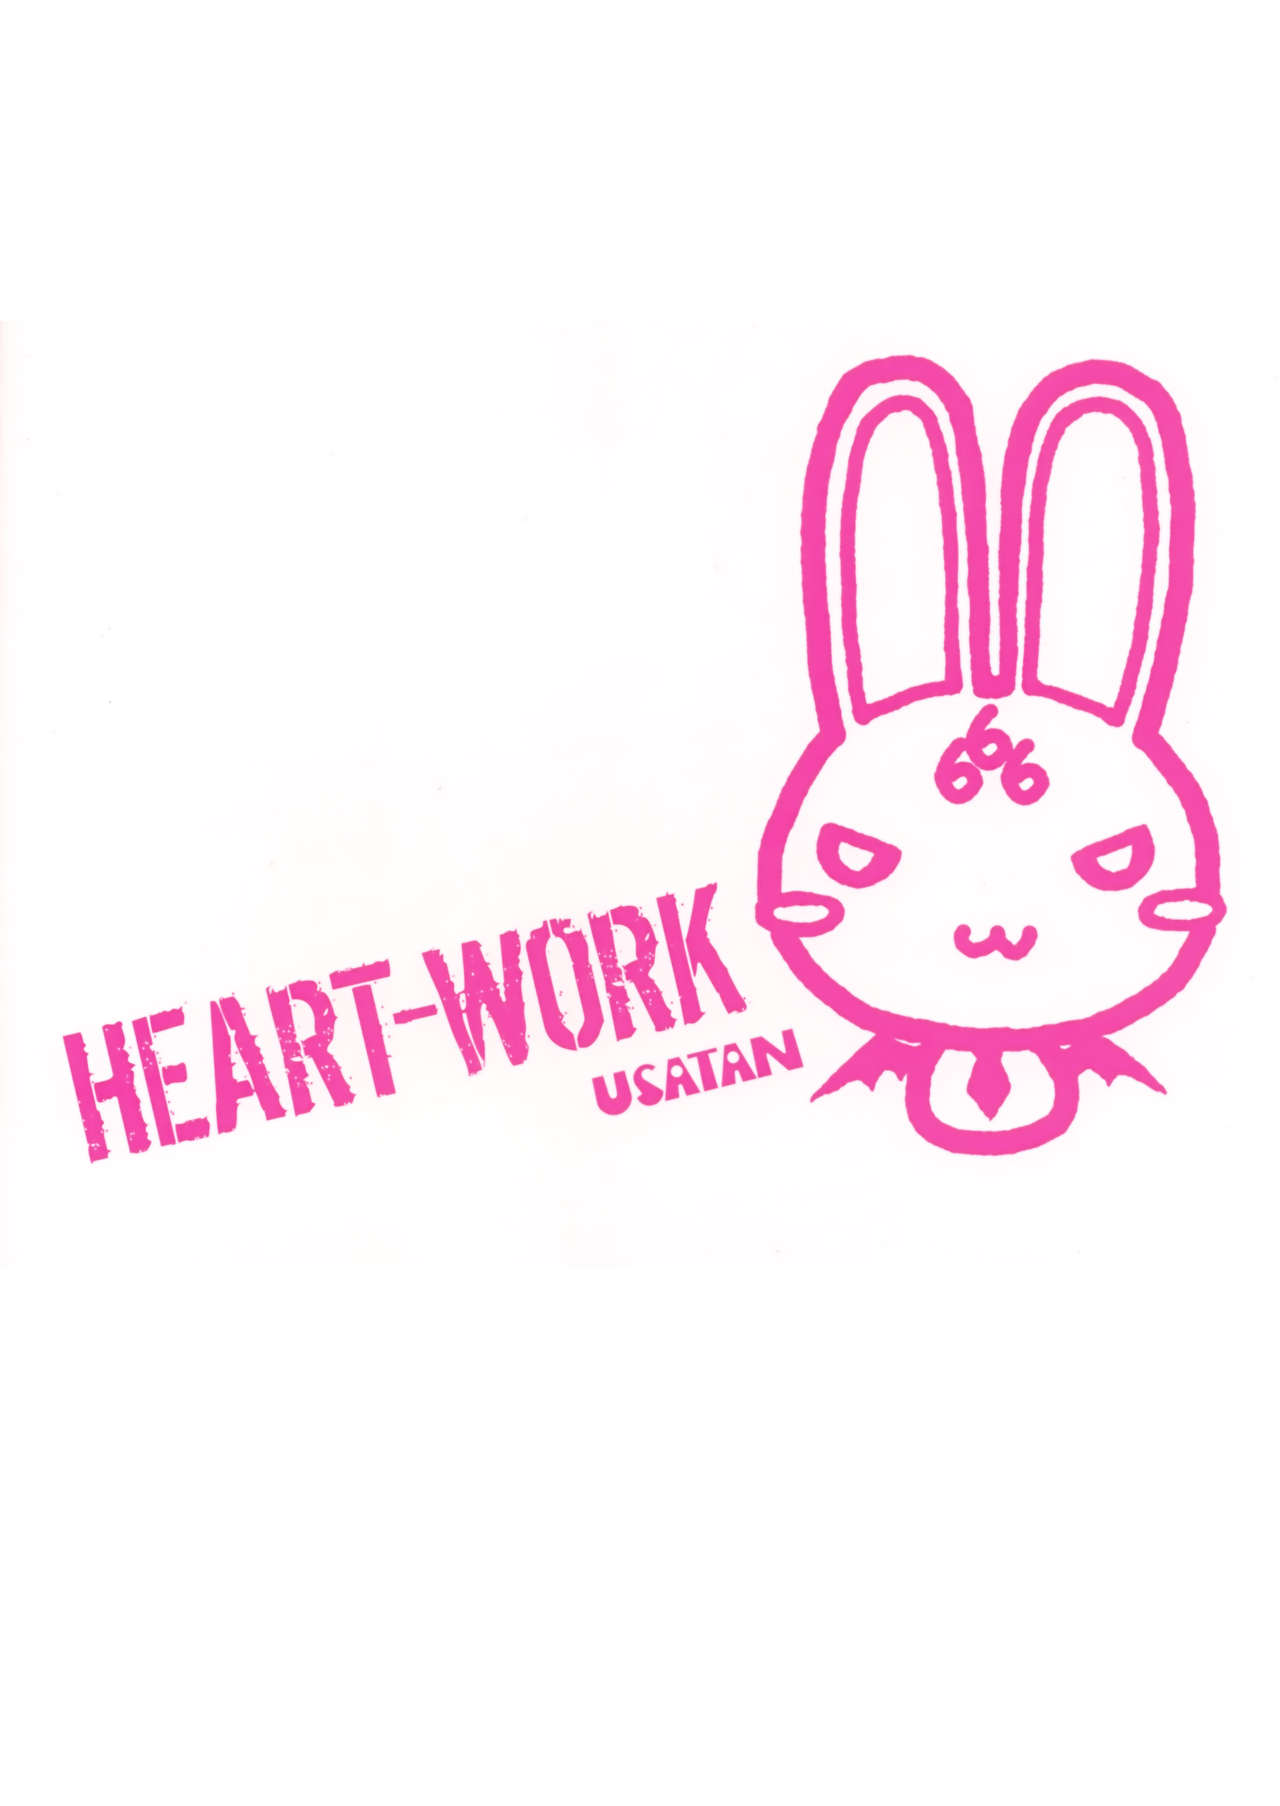 (C83) [HEART WORK (Suzuhira Hiro)] Waiting for you - HEART-WORK 2012.12.29 (Various) (C83) [HEART WORK (鈴平ひろ)] Waiting for you - HEART-WORK 2012.12.29 (よろず)